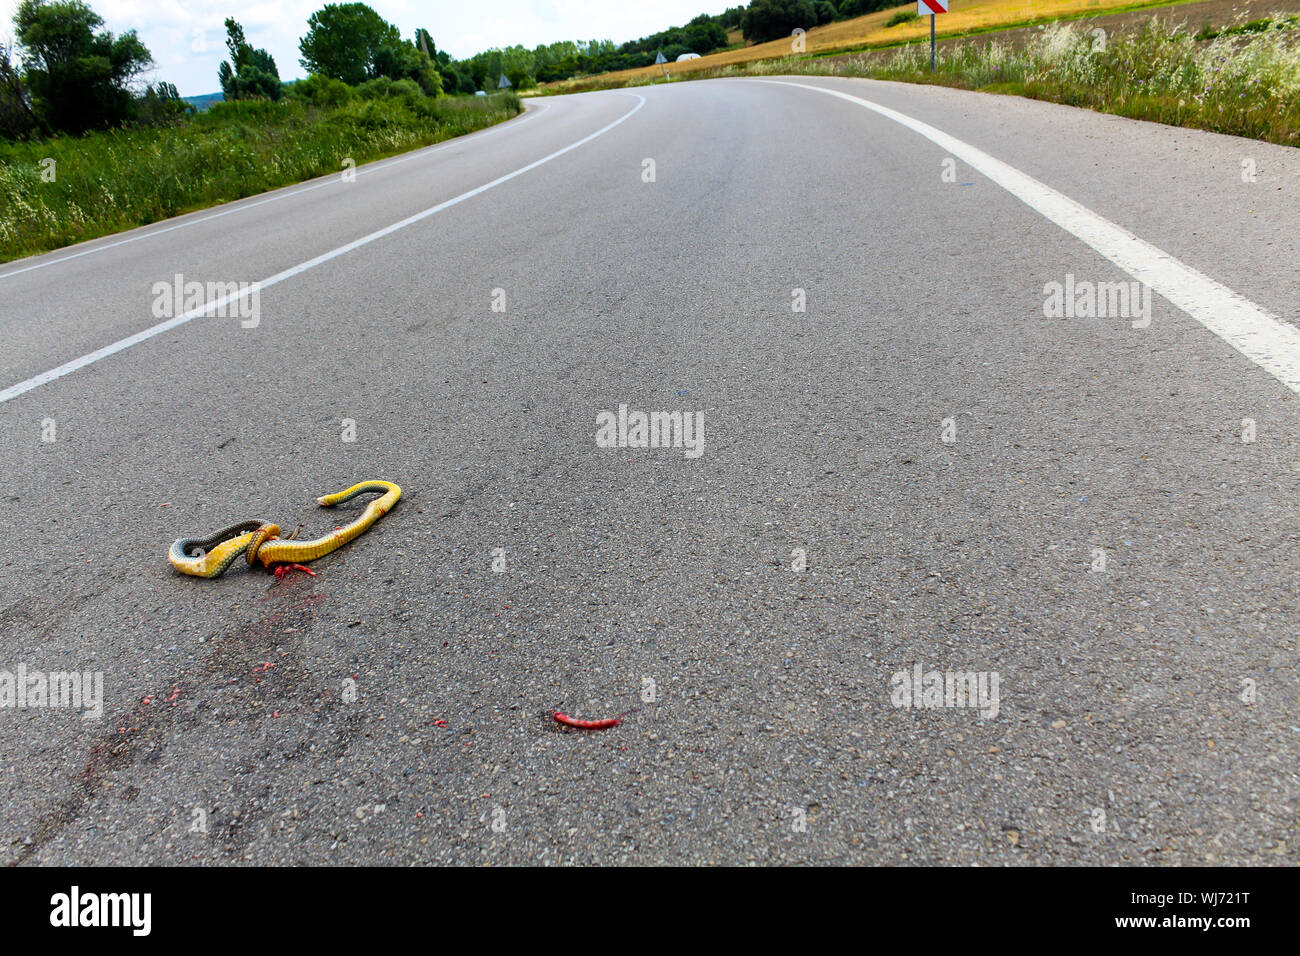 A dead snake crushed on asphalt road Stock Photo